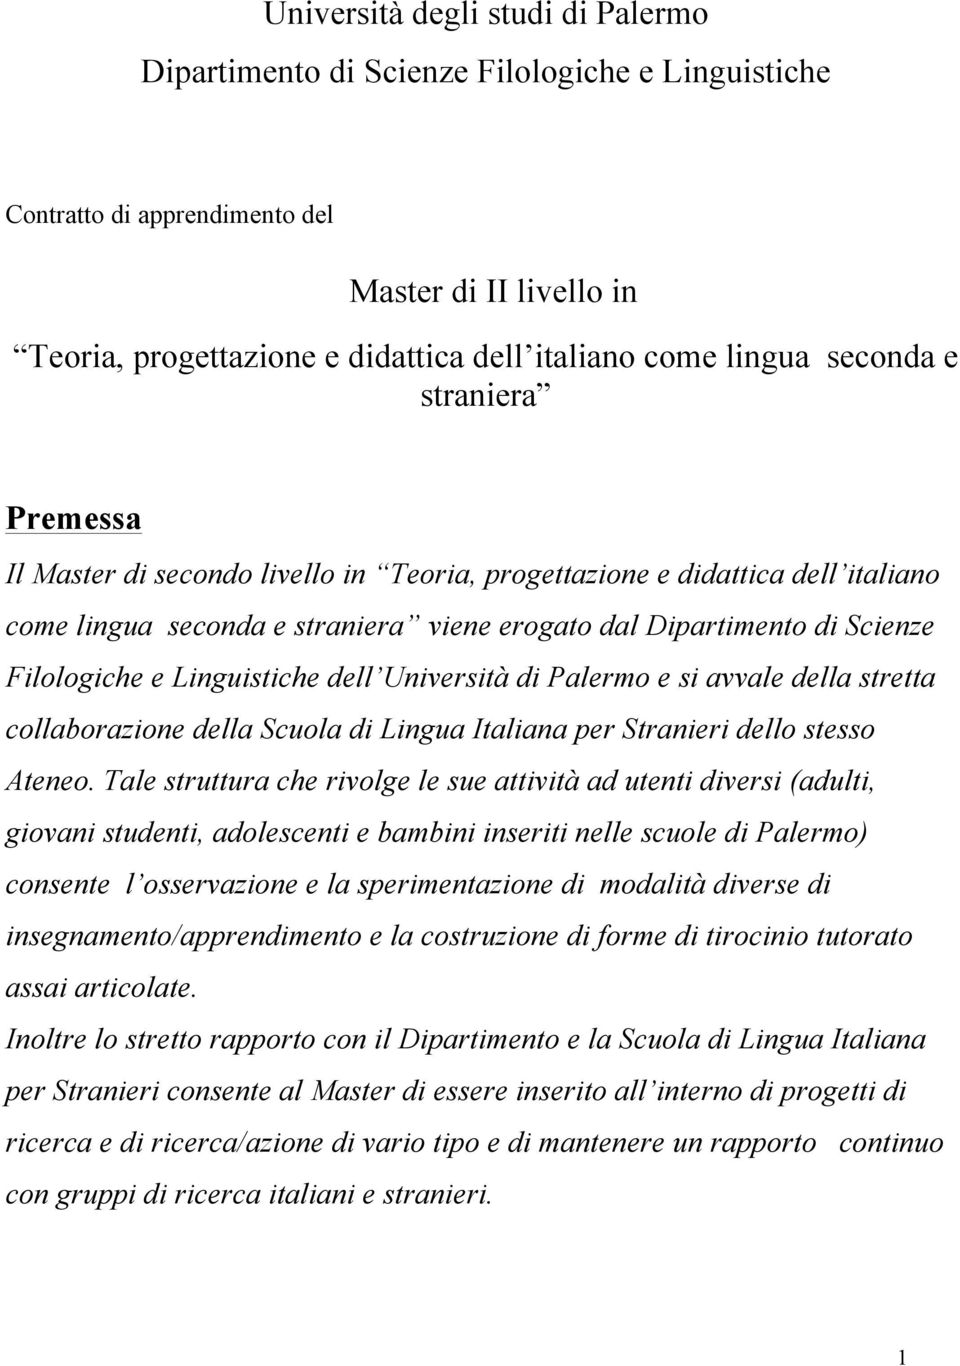 Linguistiche dell Università di Palermo e si avvale della stretta collaborazione della Scuola di Lingua Italiana per Stranieri dello stesso Ateneo.